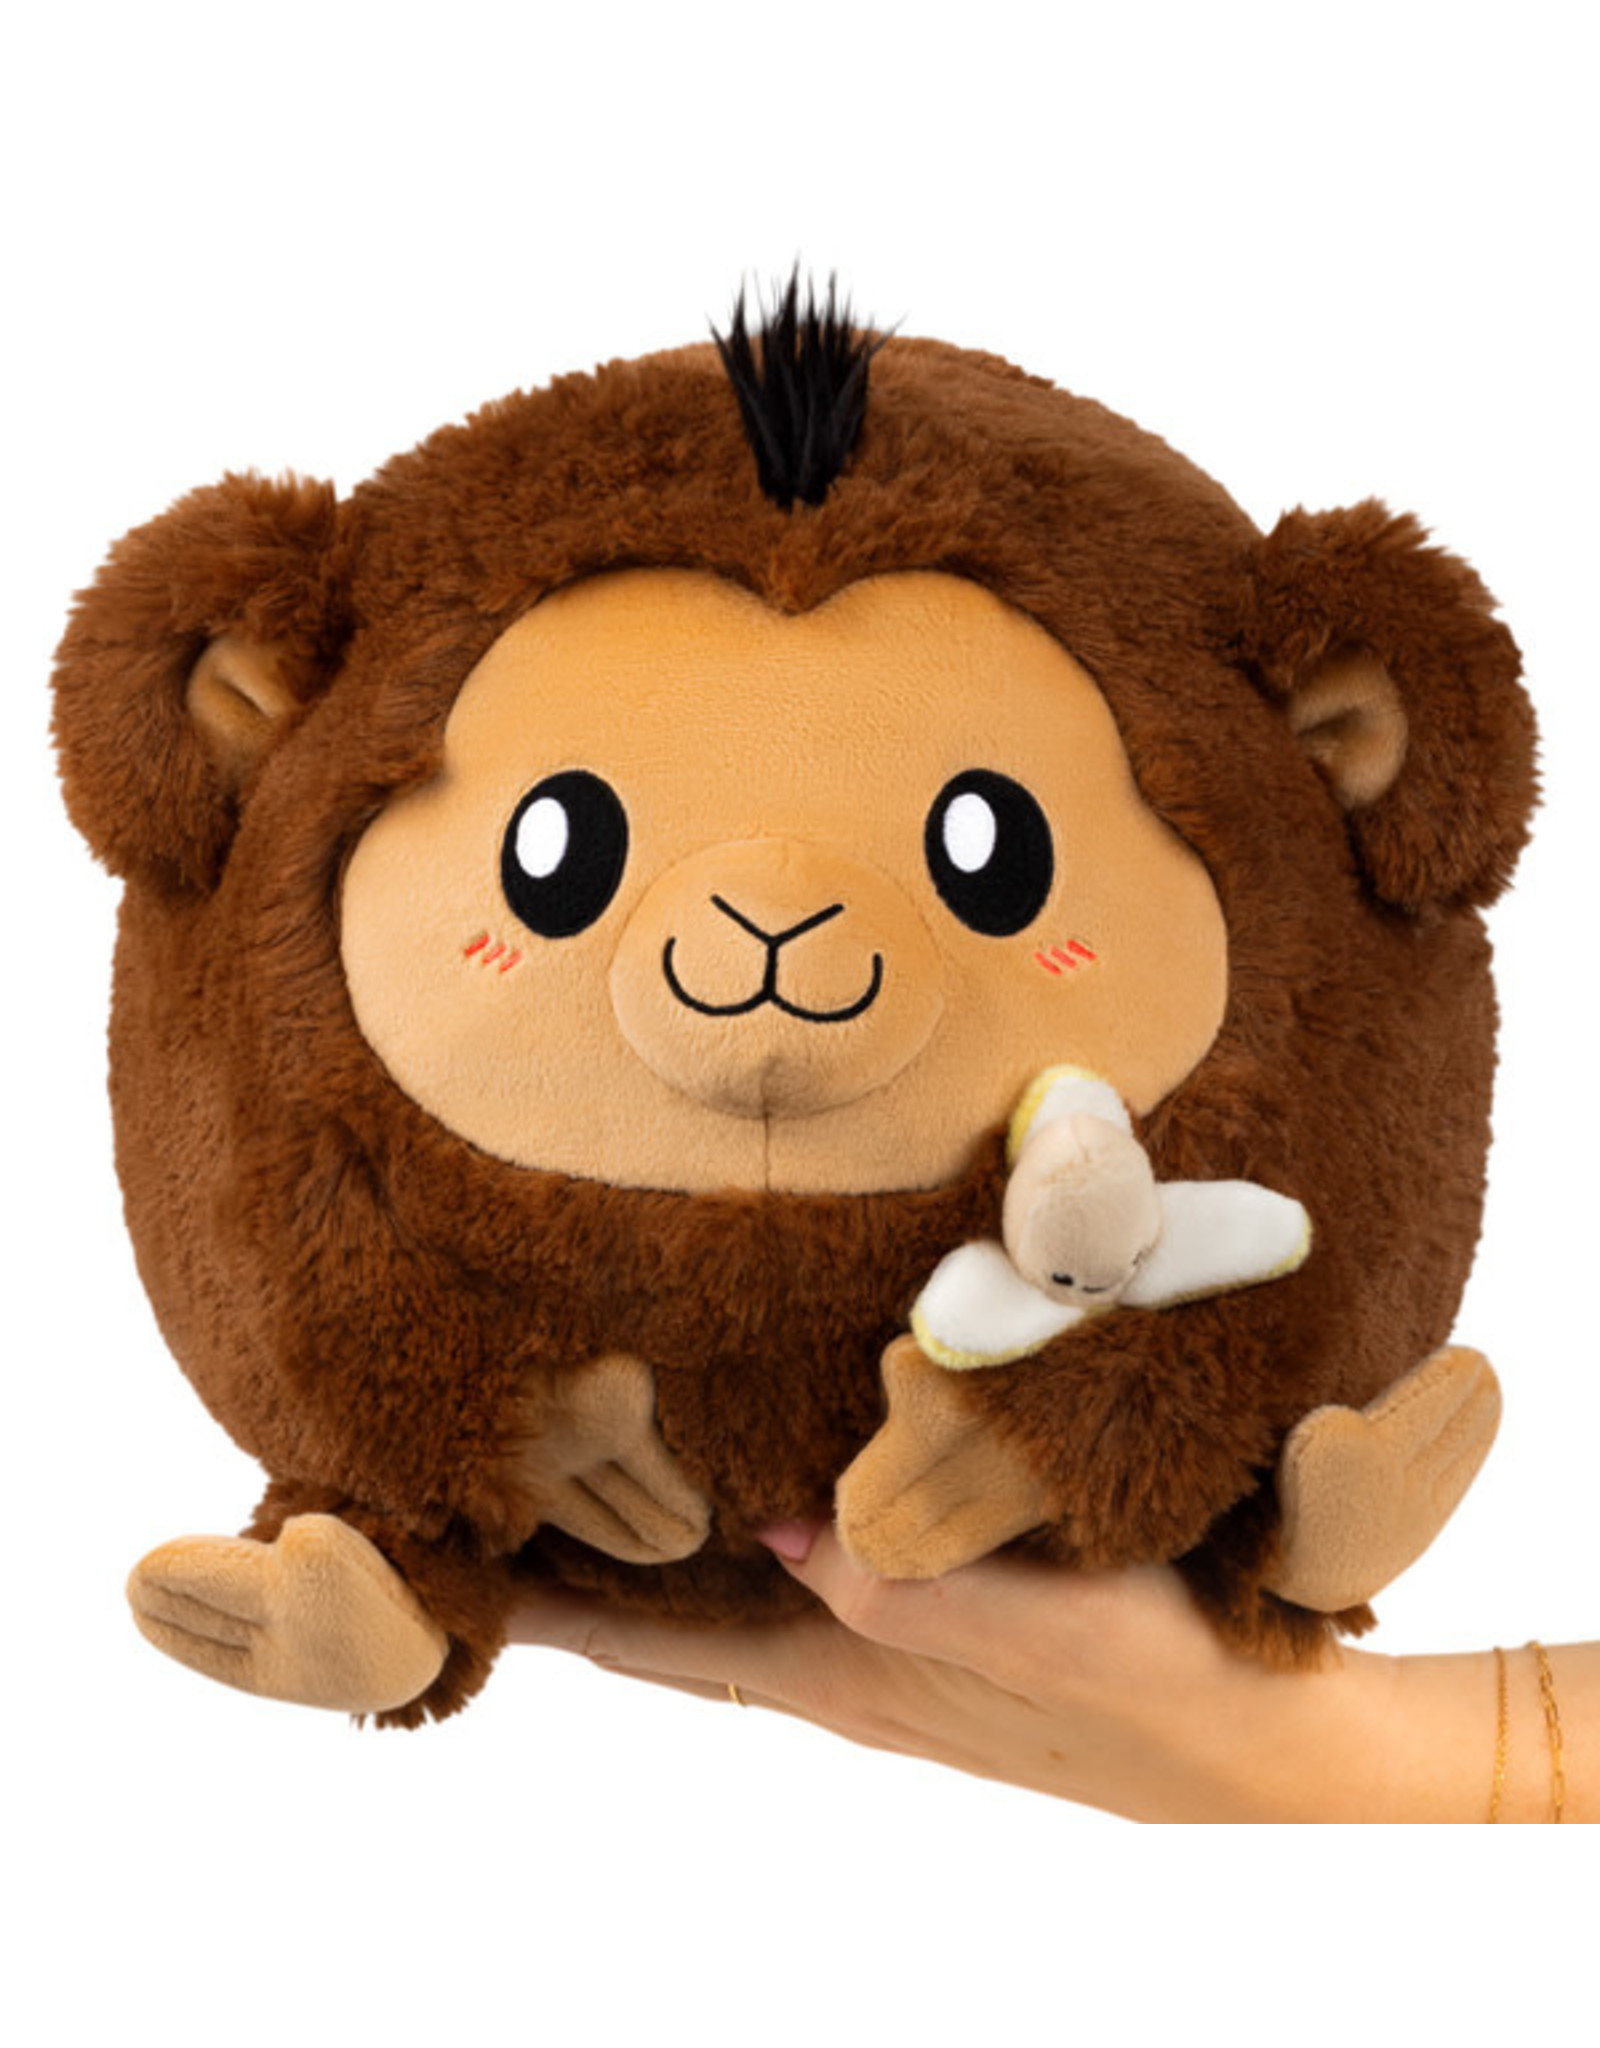 Mini Monkey Squishable